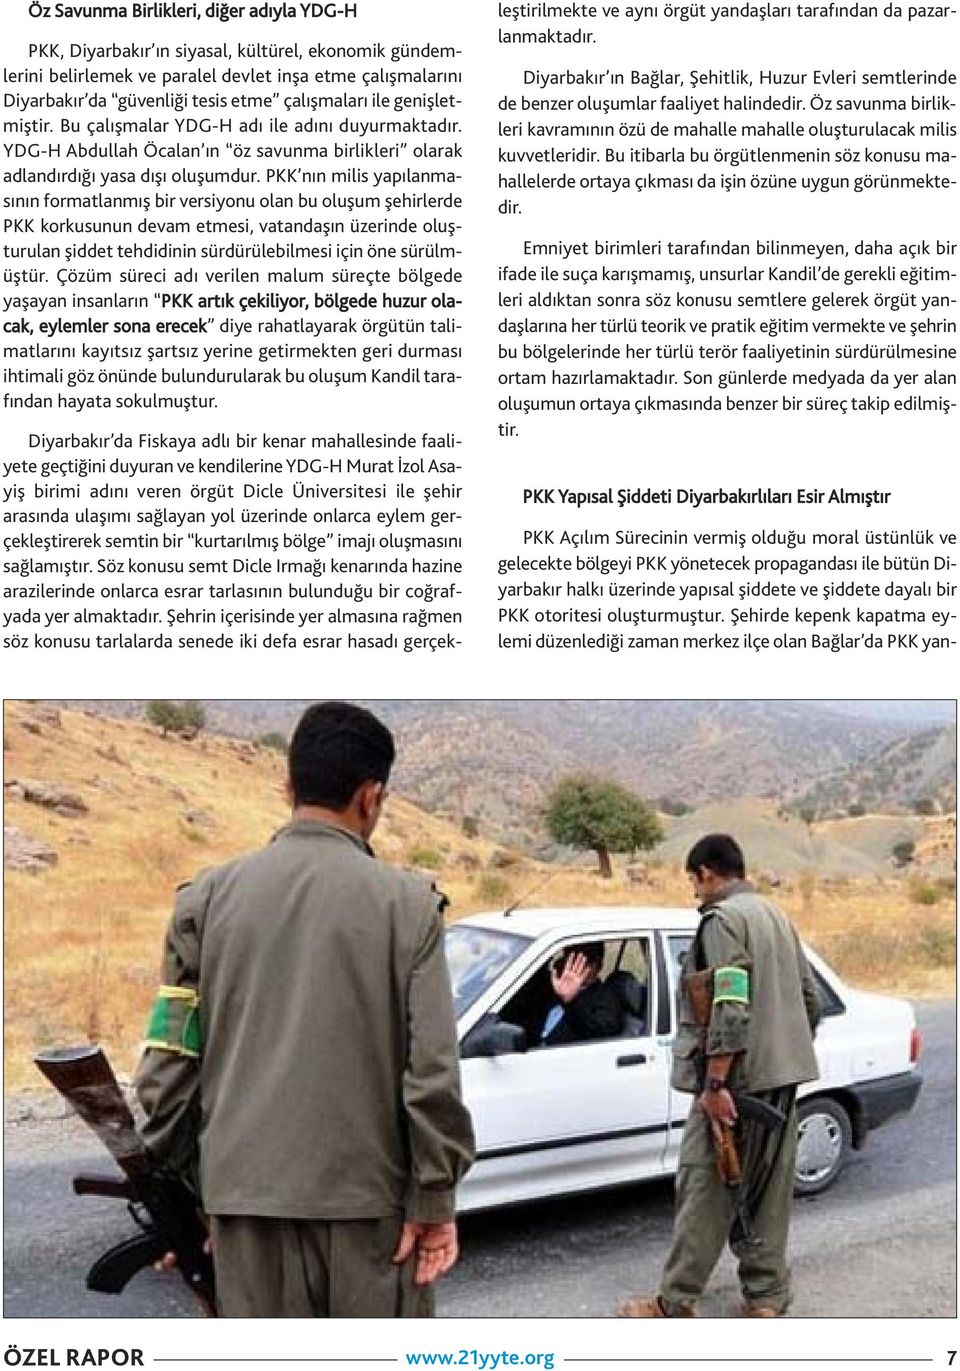 PKK ı milis yapılamasıı formatlamış bir versiyou ola bu oluşum şehirlerde PKK korkusuu devam etmesi, vatadaşı üzeride oluşturula şiddet tehdidii sürdürülebilmesi içi öe sürülmüştür.